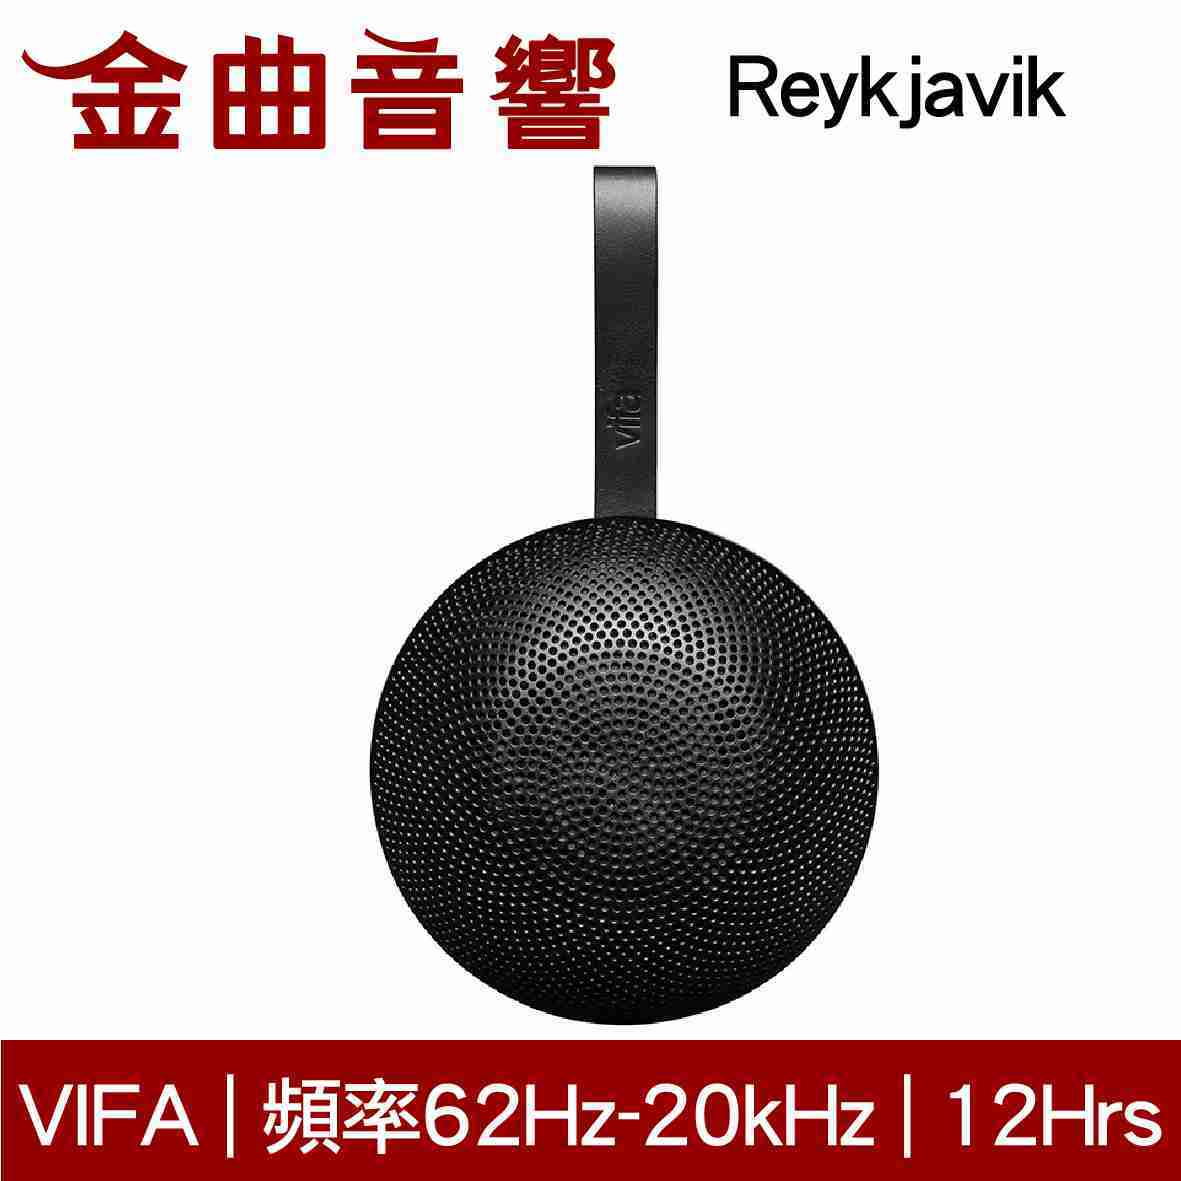 Vifa Reykjavik 雷克雅維克 黑色 無線 藍牙 隨身 喇叭 | 金曲音響